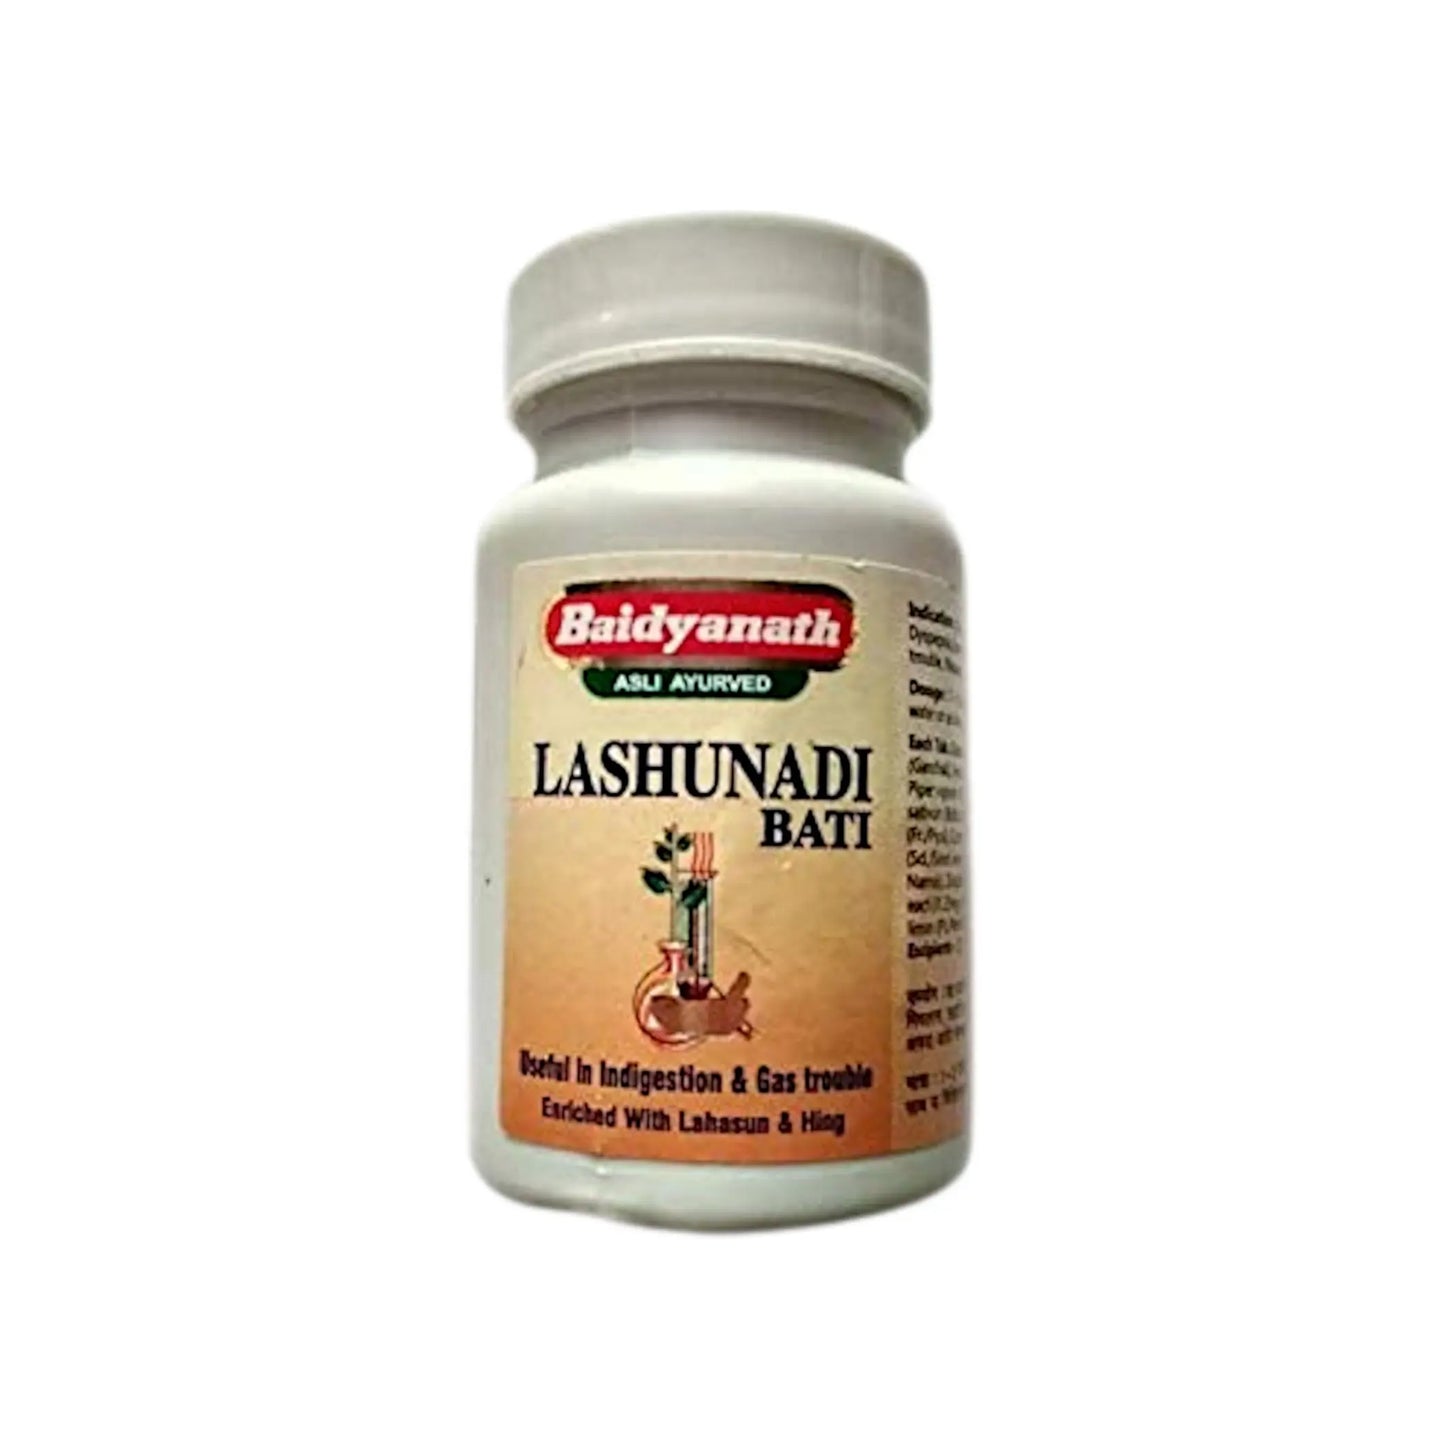 Baidyanath - Lashunadi Bati 40 Tablets - my-ayurvedic